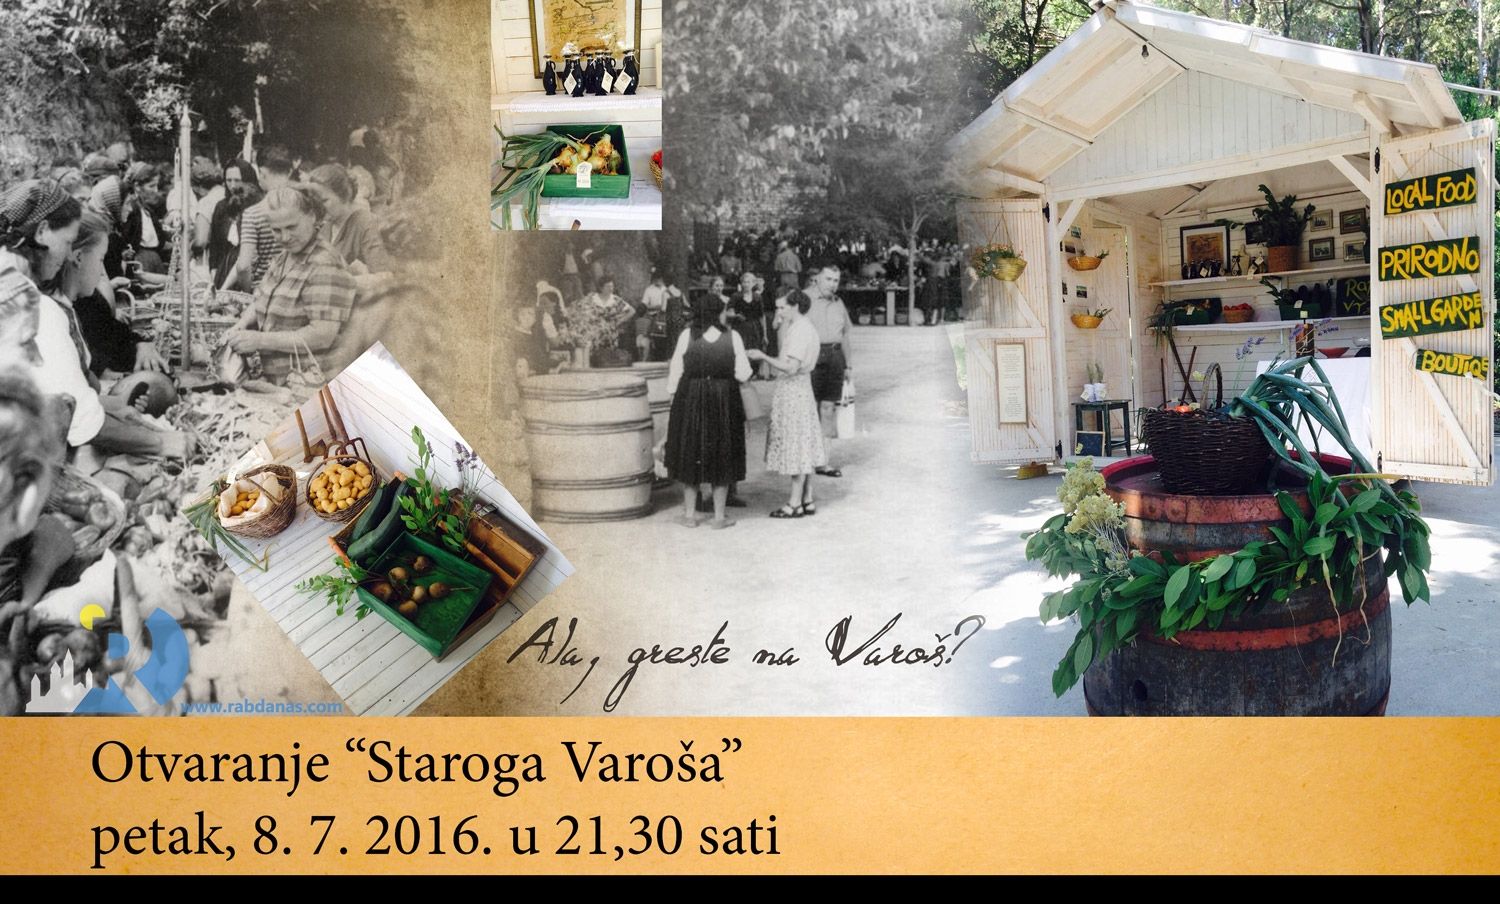 Otvaranje “Staroga Varoša” / Petak/Friday 08. 07. 2016.